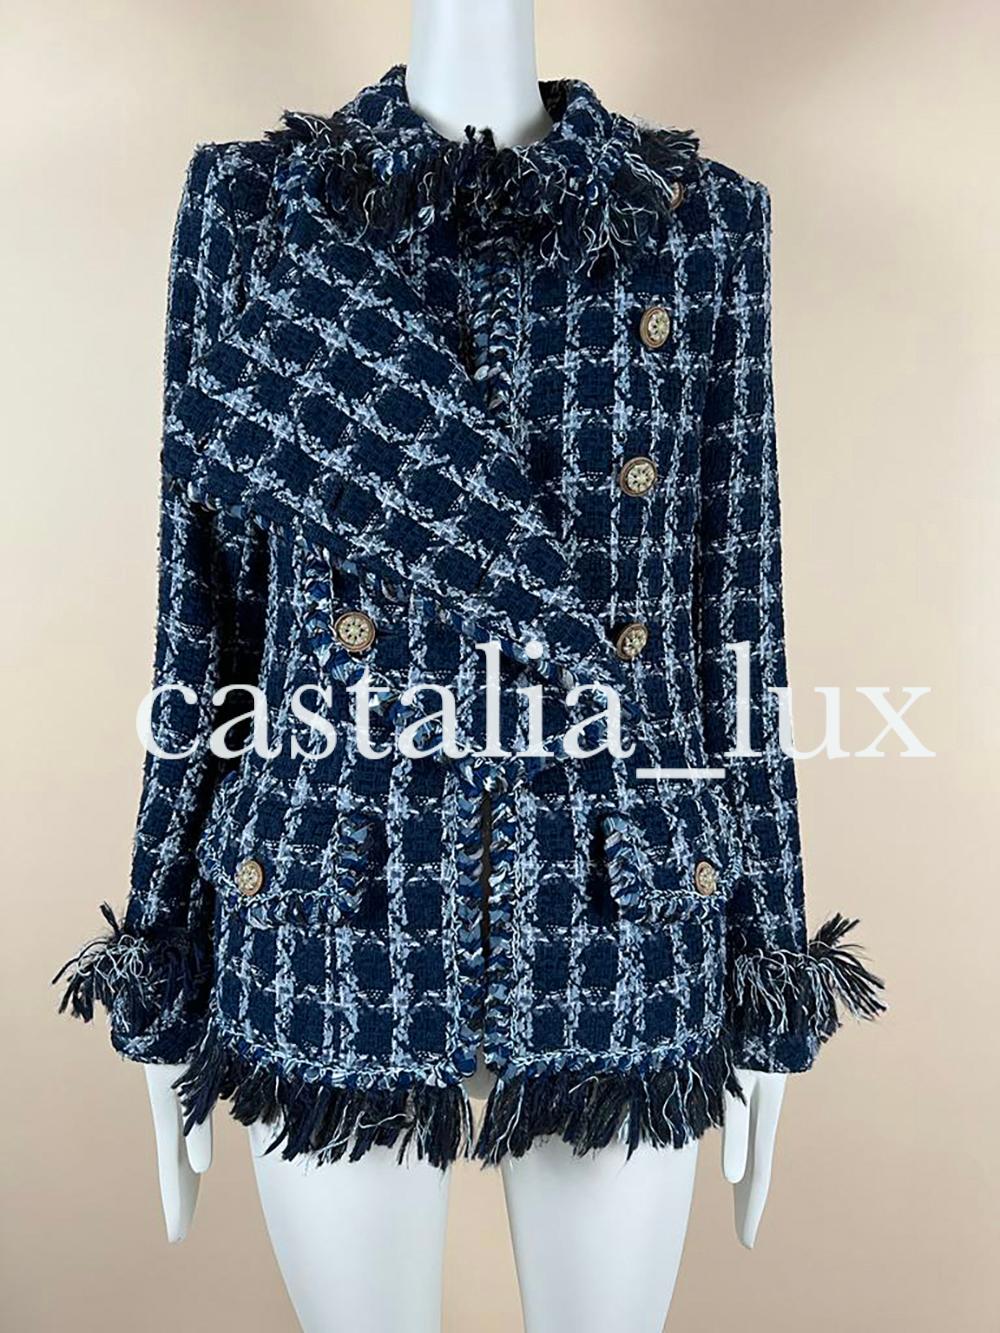 Chanel 11K$ Paris / Dallas Runway Tweed Jacket For Sale 1